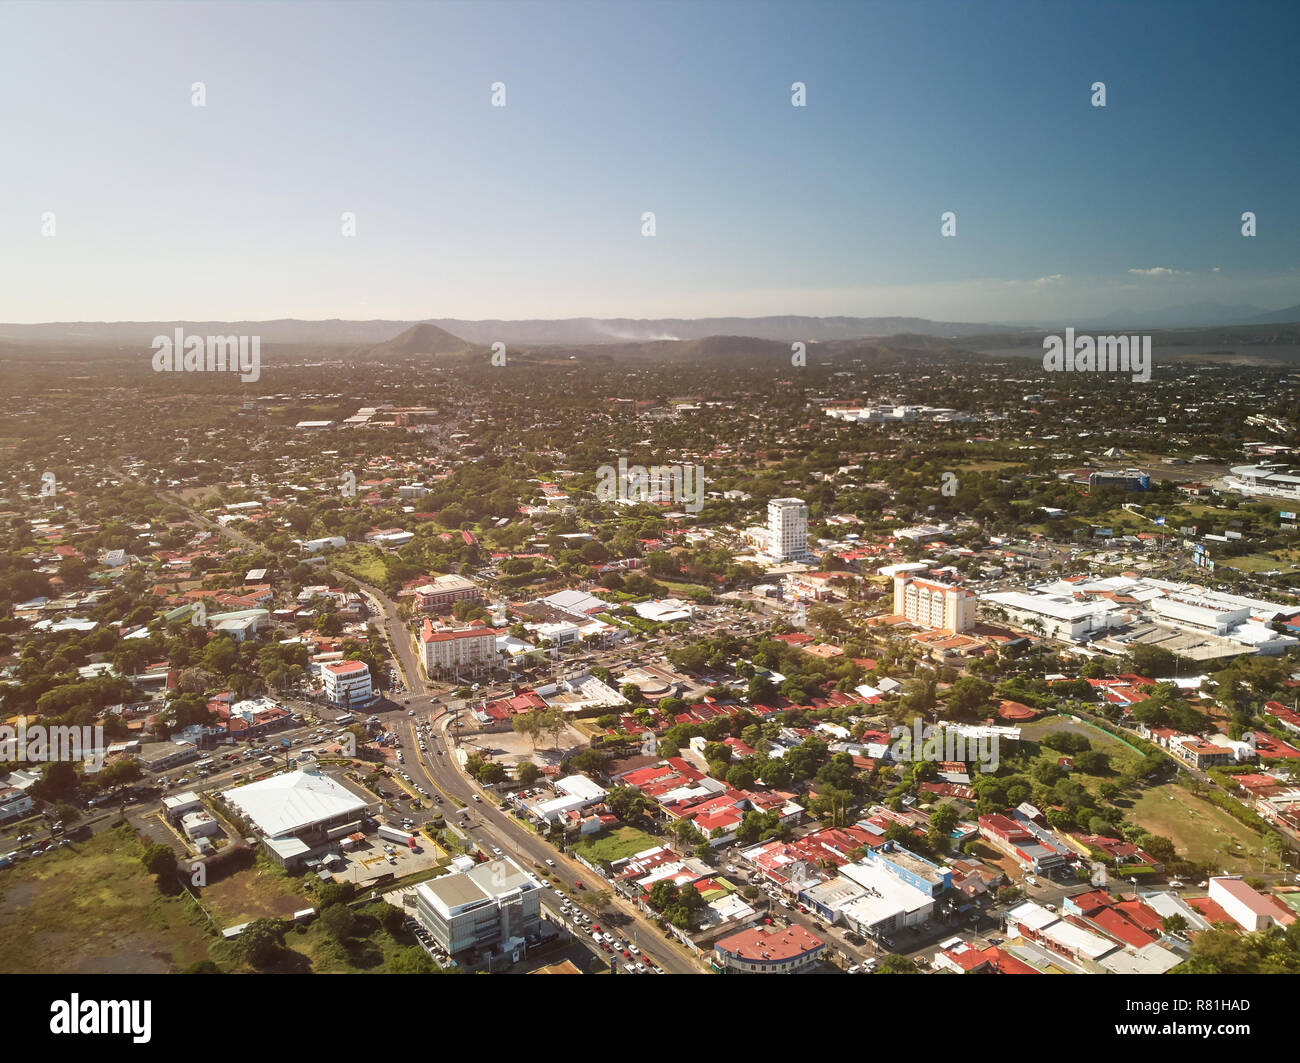 Les rues de la ville de Managua en vue de drones aériens Banque D'Images